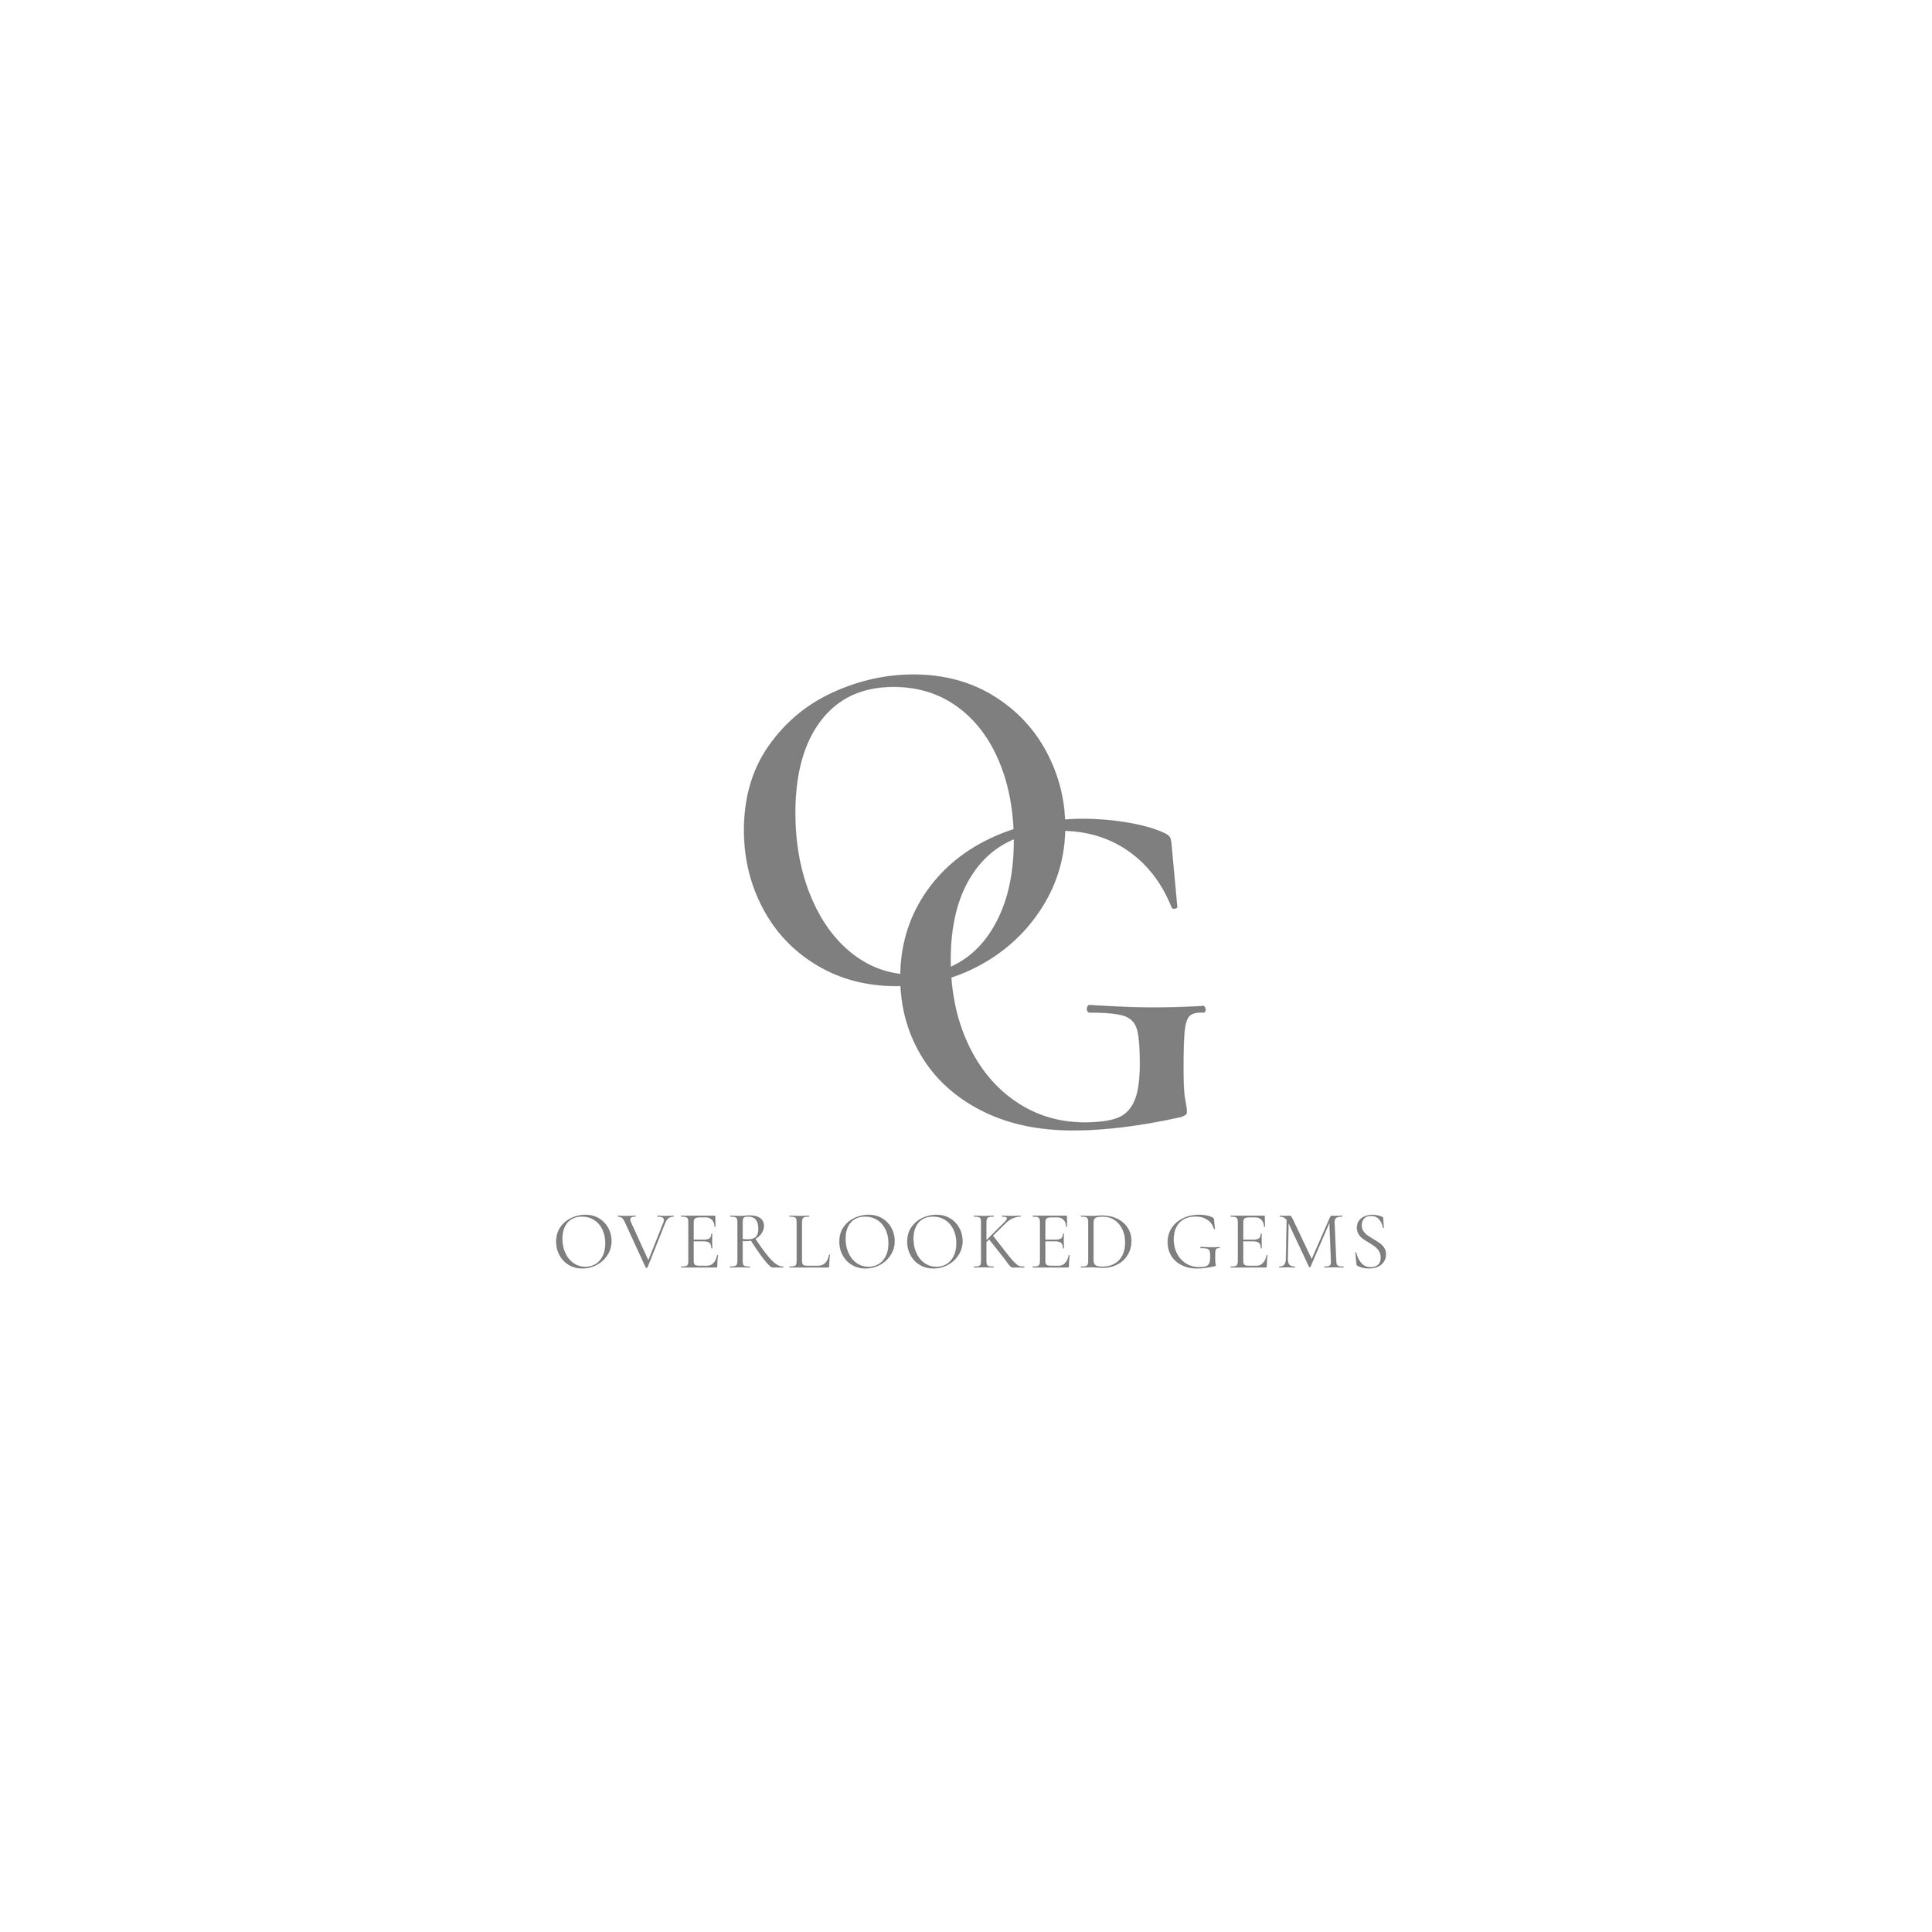 OG logo- proofs 2 OG.jpg